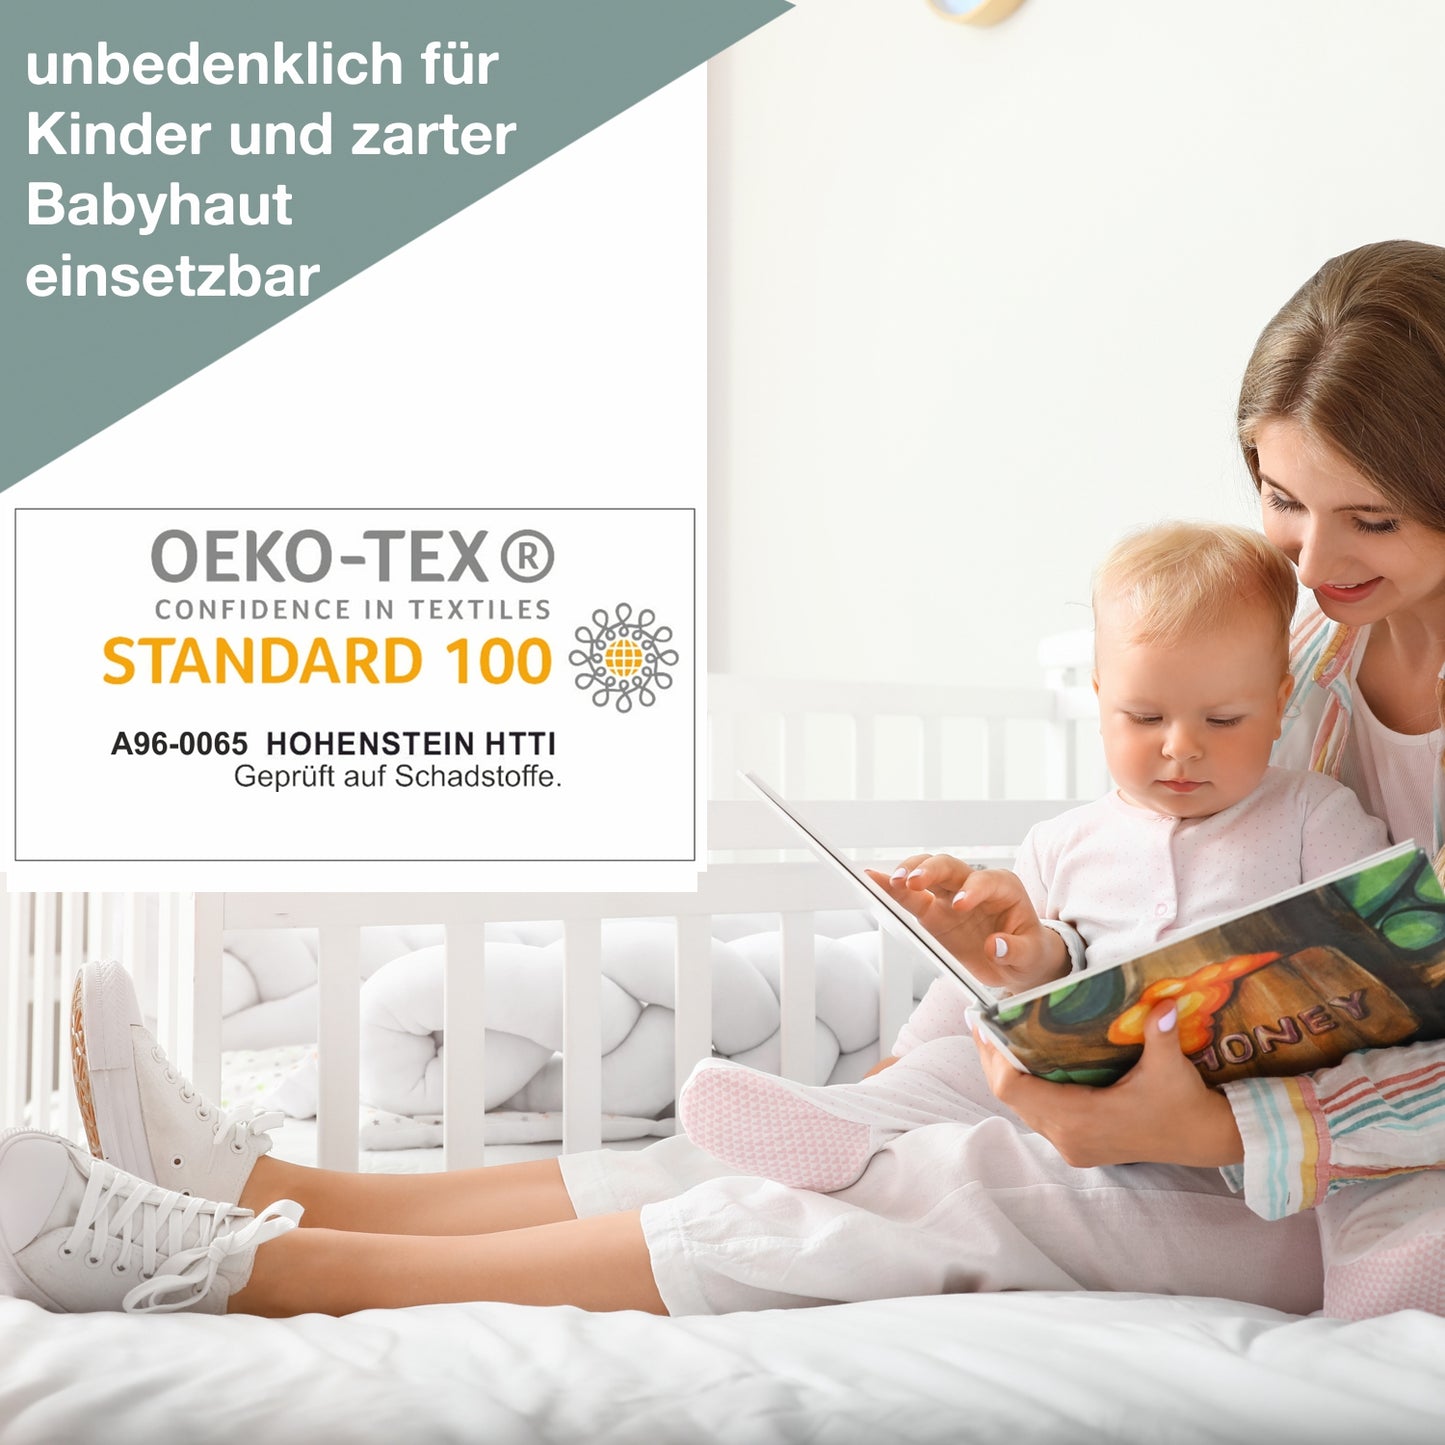 OEKO-TEX Zertifizierung